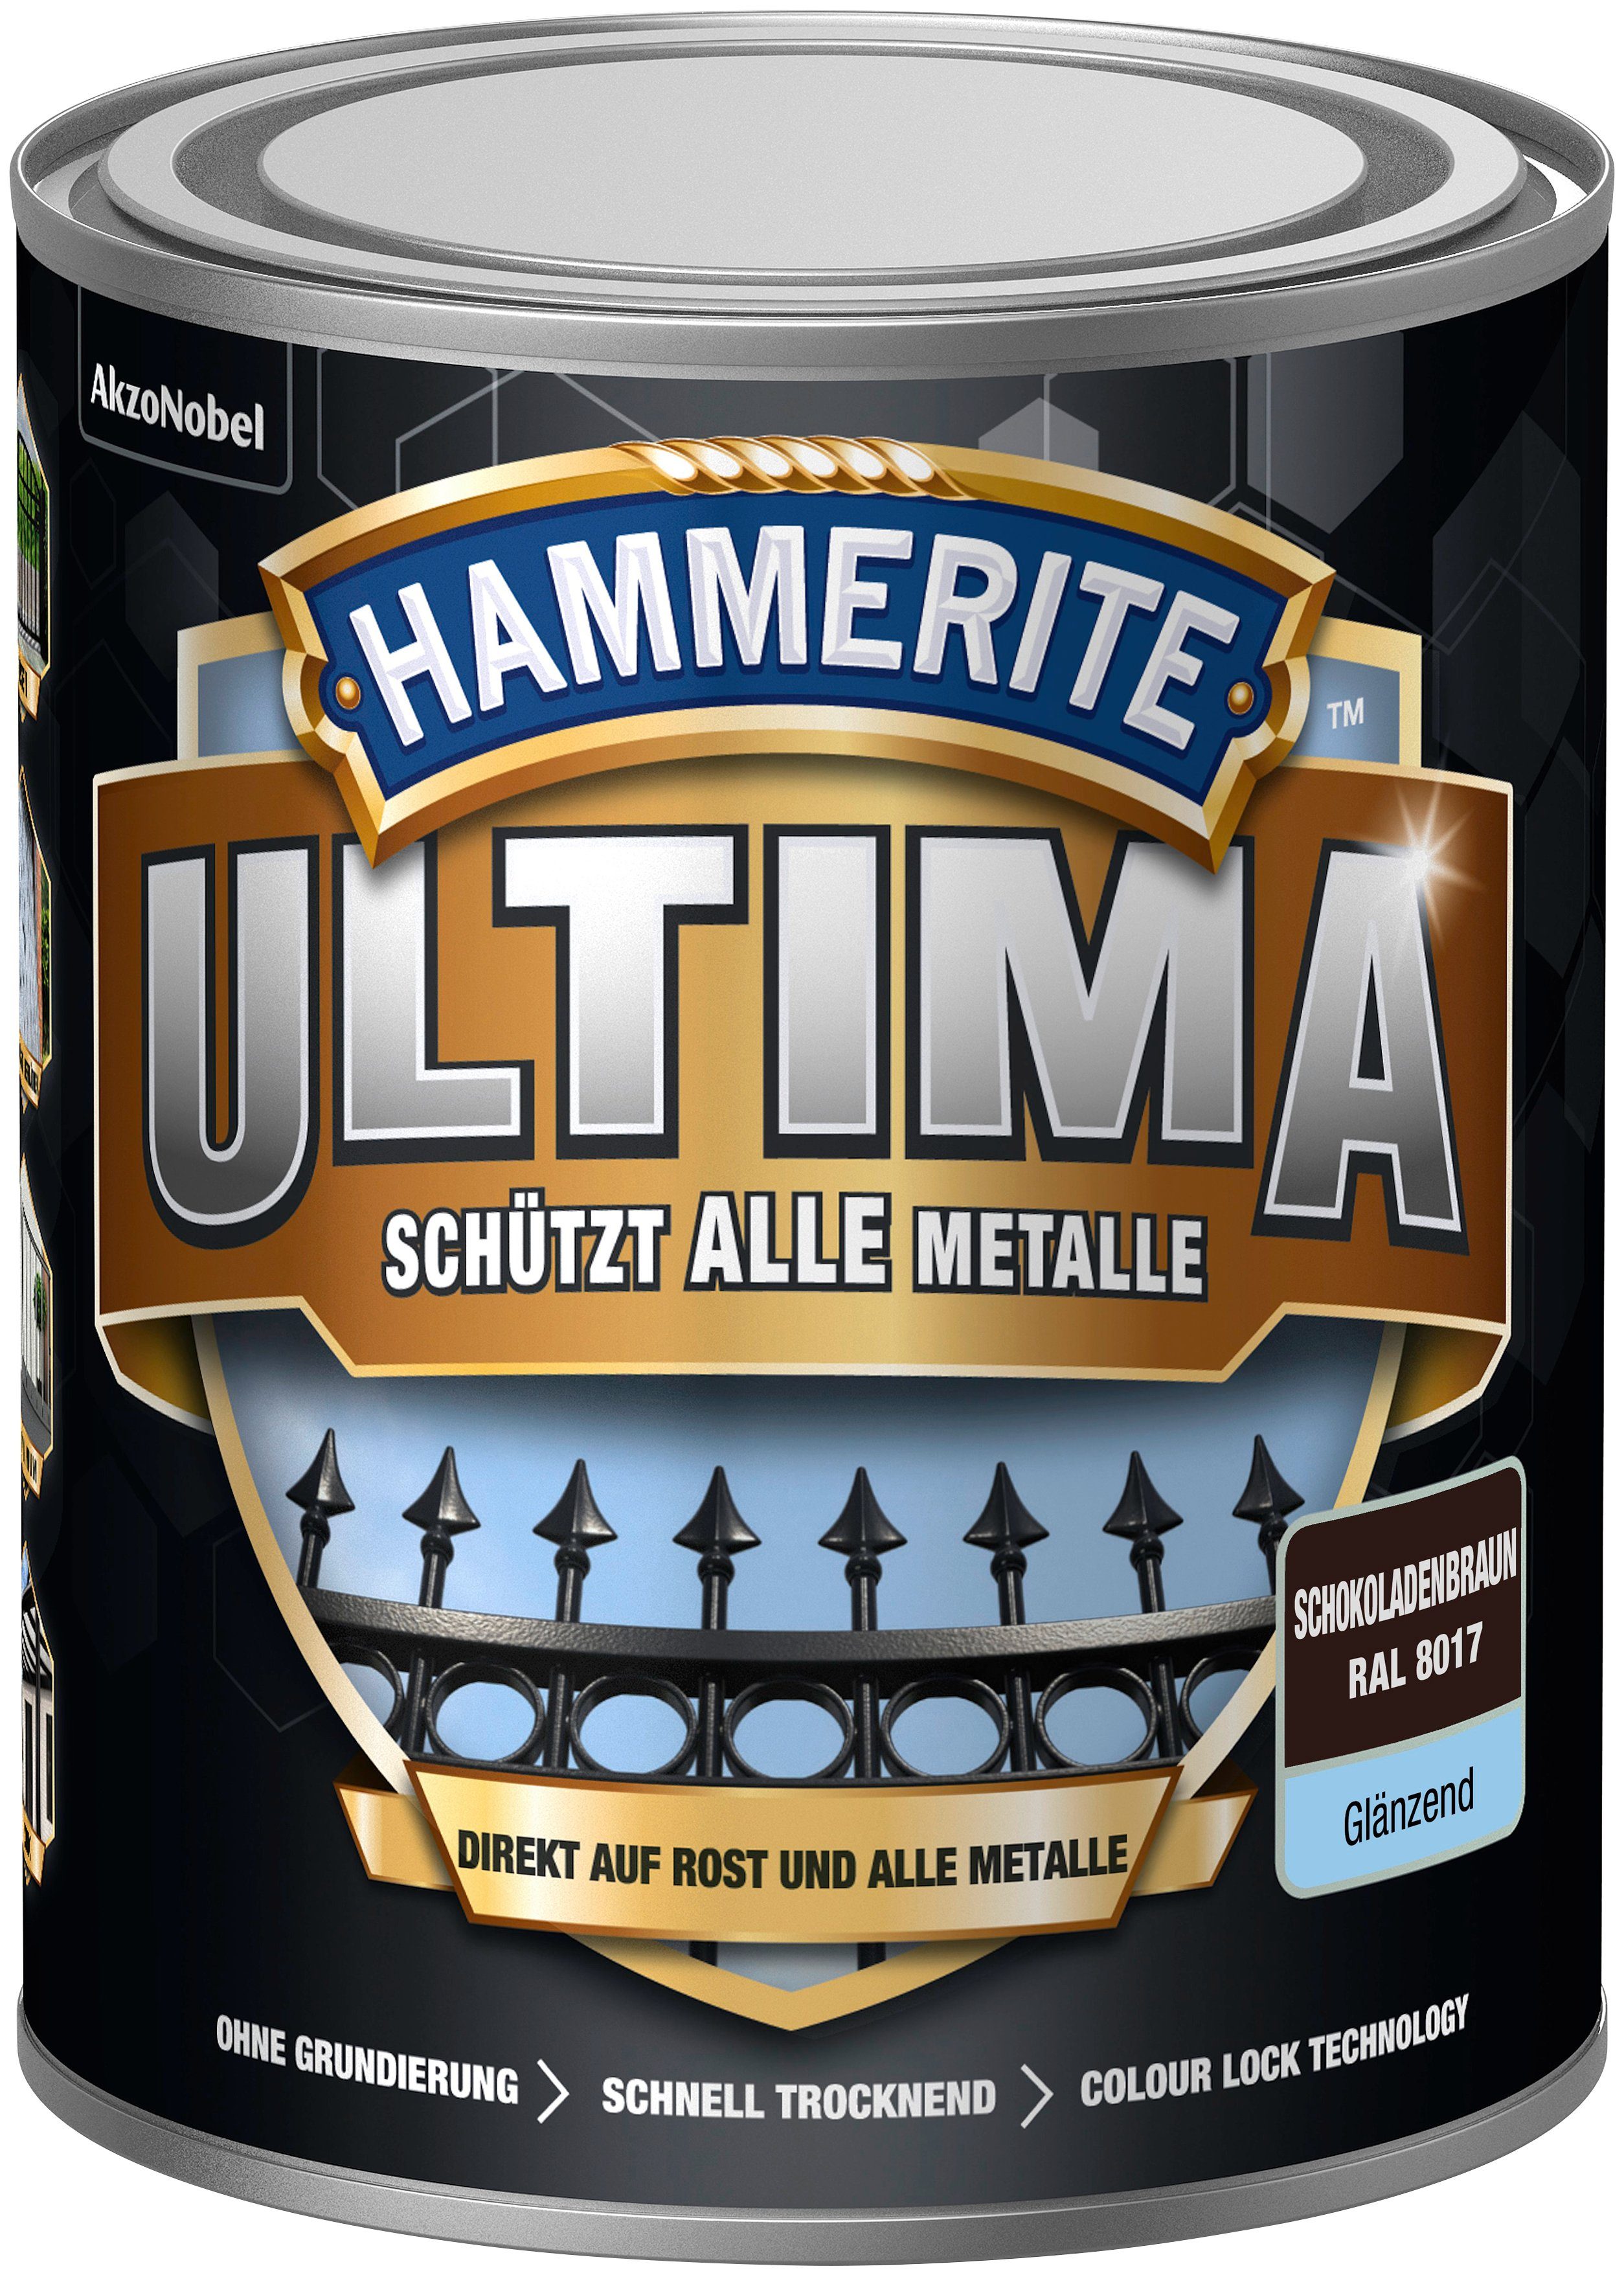 Hammerite  Metallschutzlack ULTIMA schützt alle Metalle, 3in1, schokoladenbraun RAL 8017, glänzend